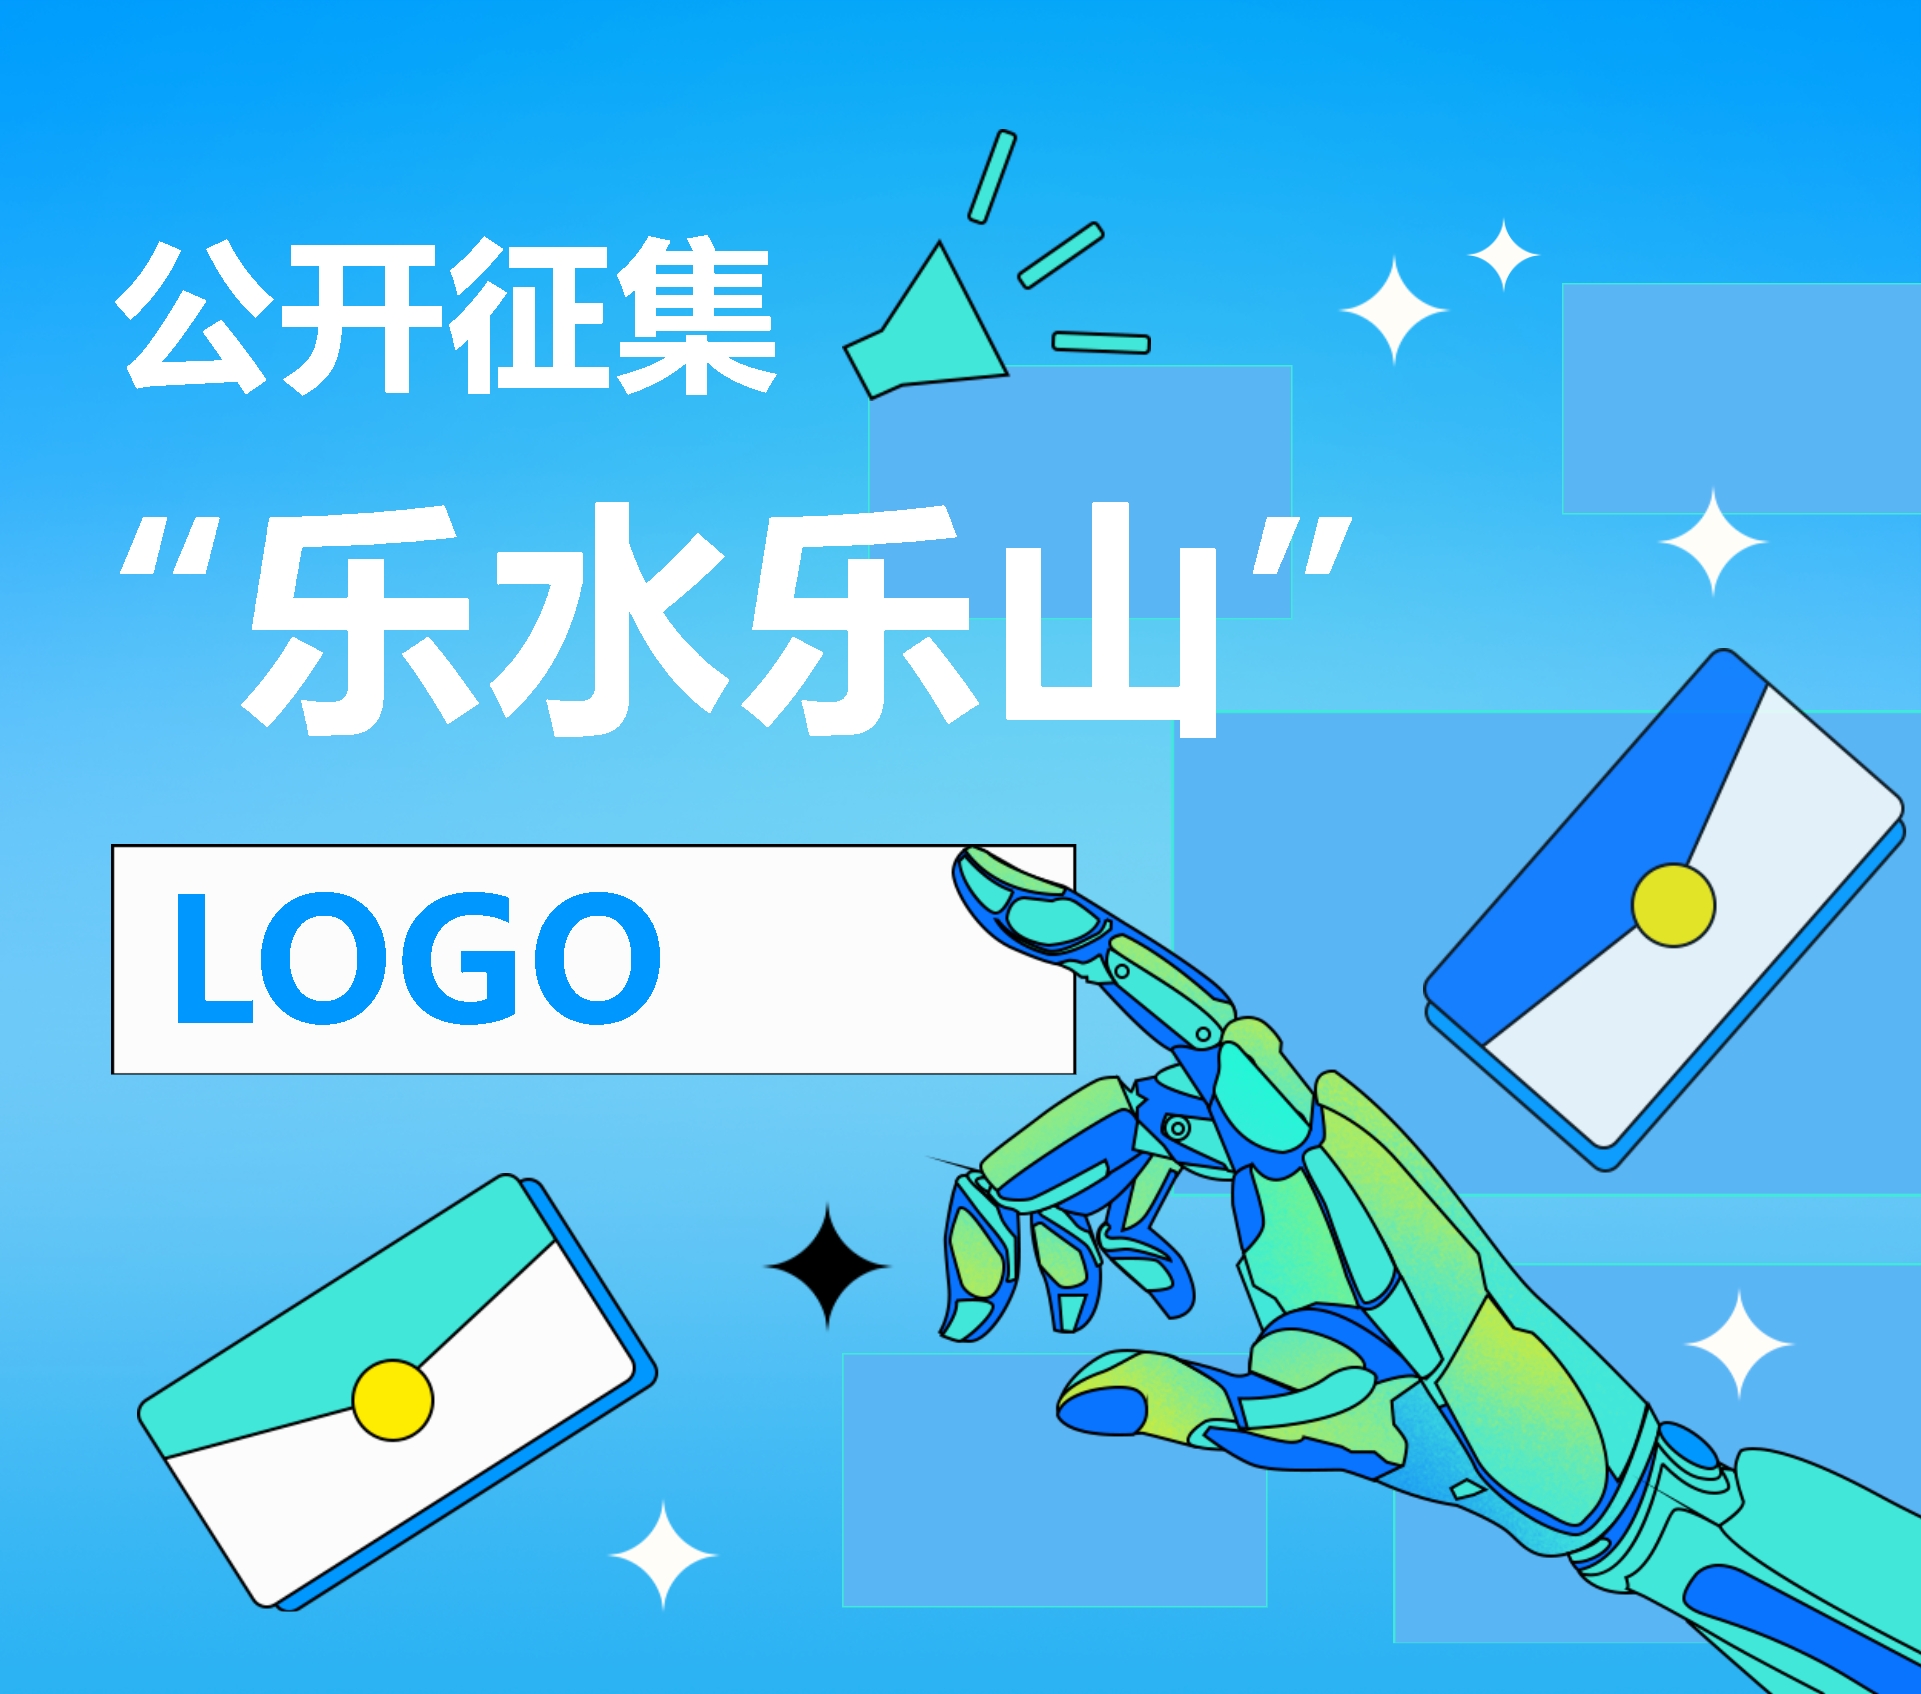 新闻客户端“乐水乐山”形象标识（LOGO）公开征集-CNYISAI艺赛